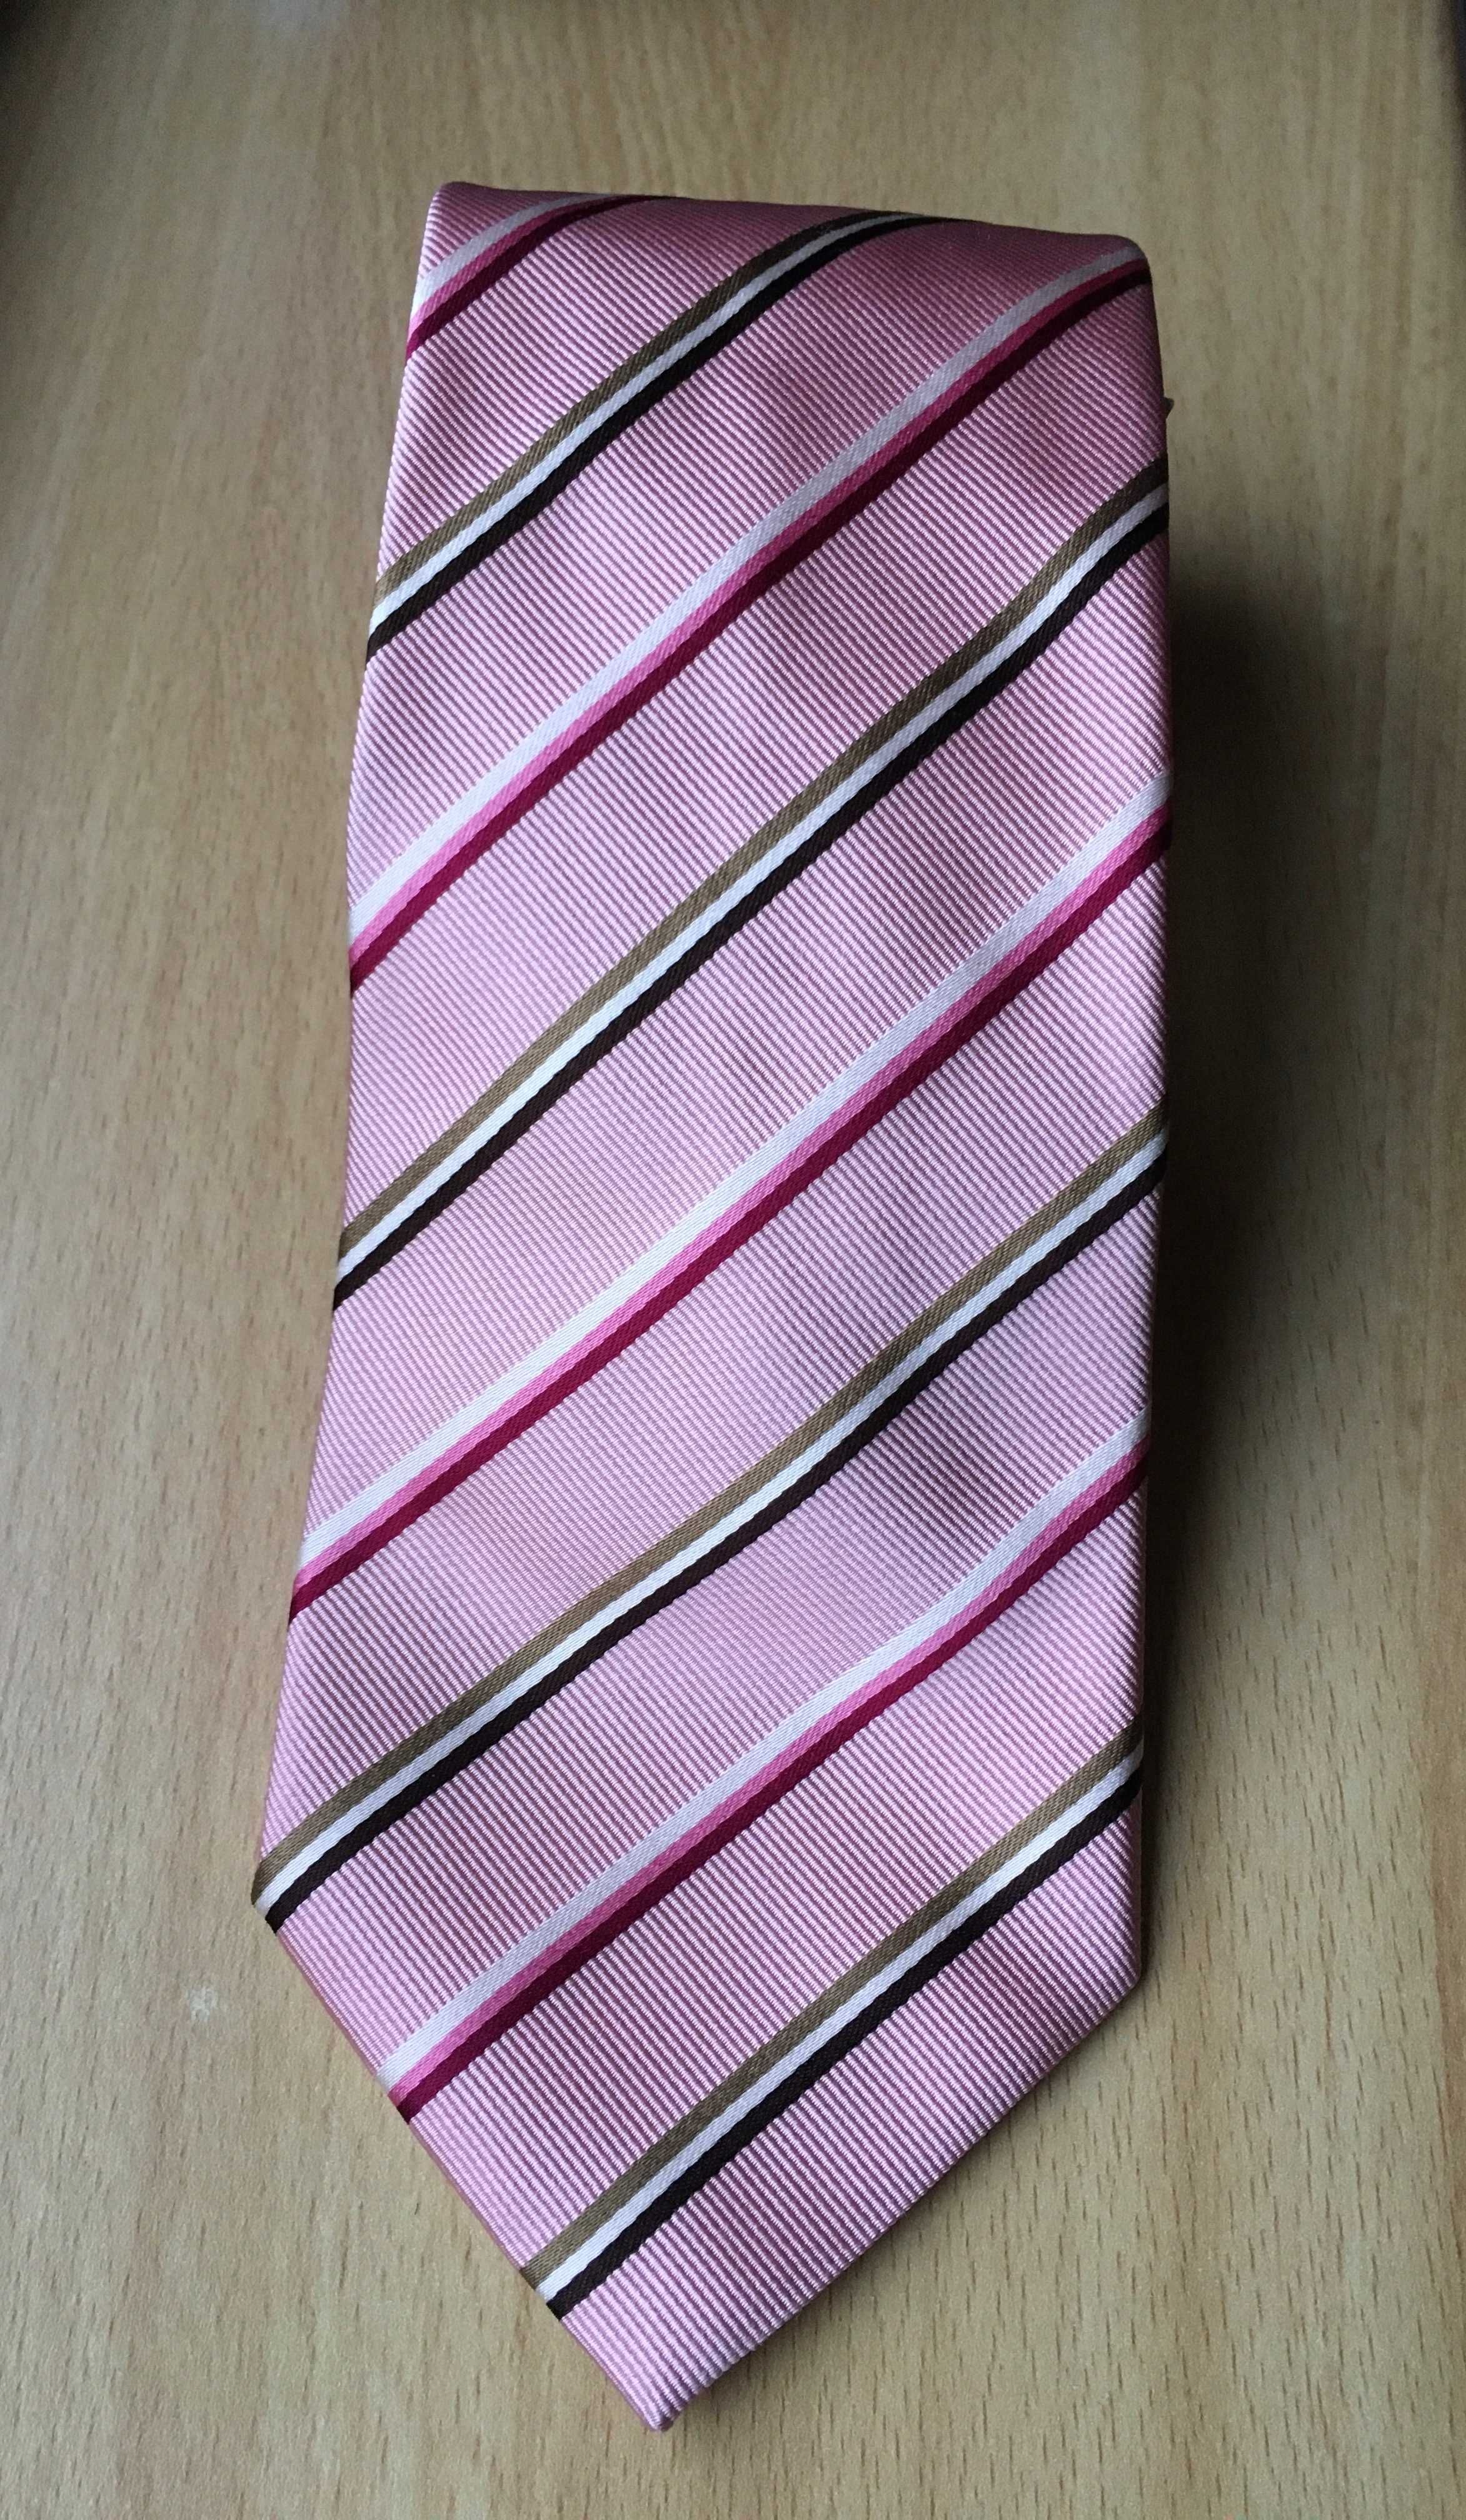 Krawat męski jedwabny w paski marki *Gant* różowy